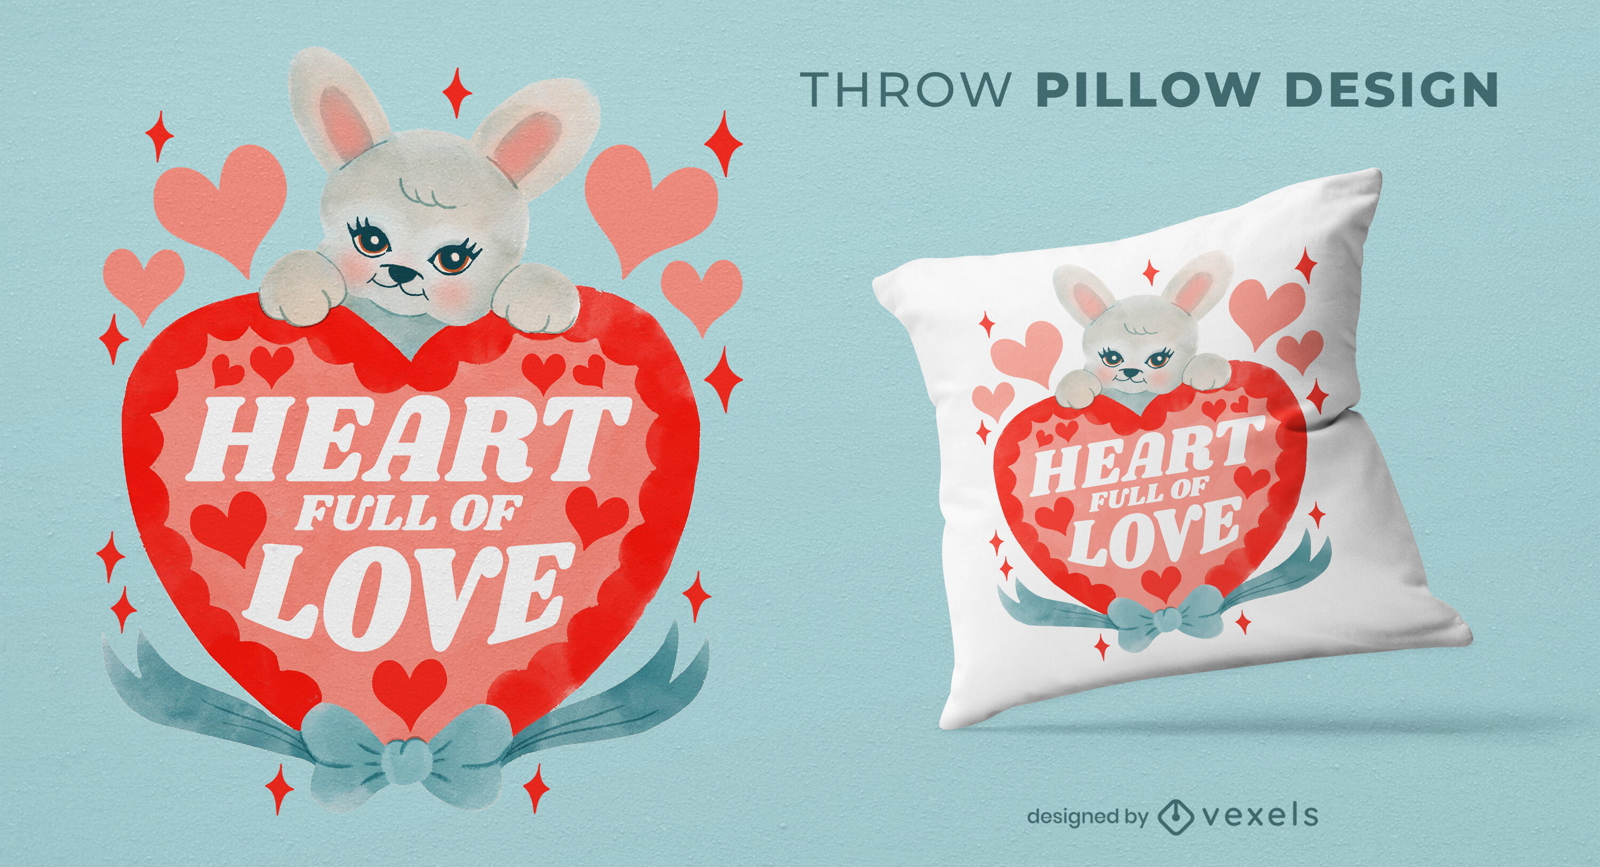 Diseño de almohada con forma de corazón de conejito.